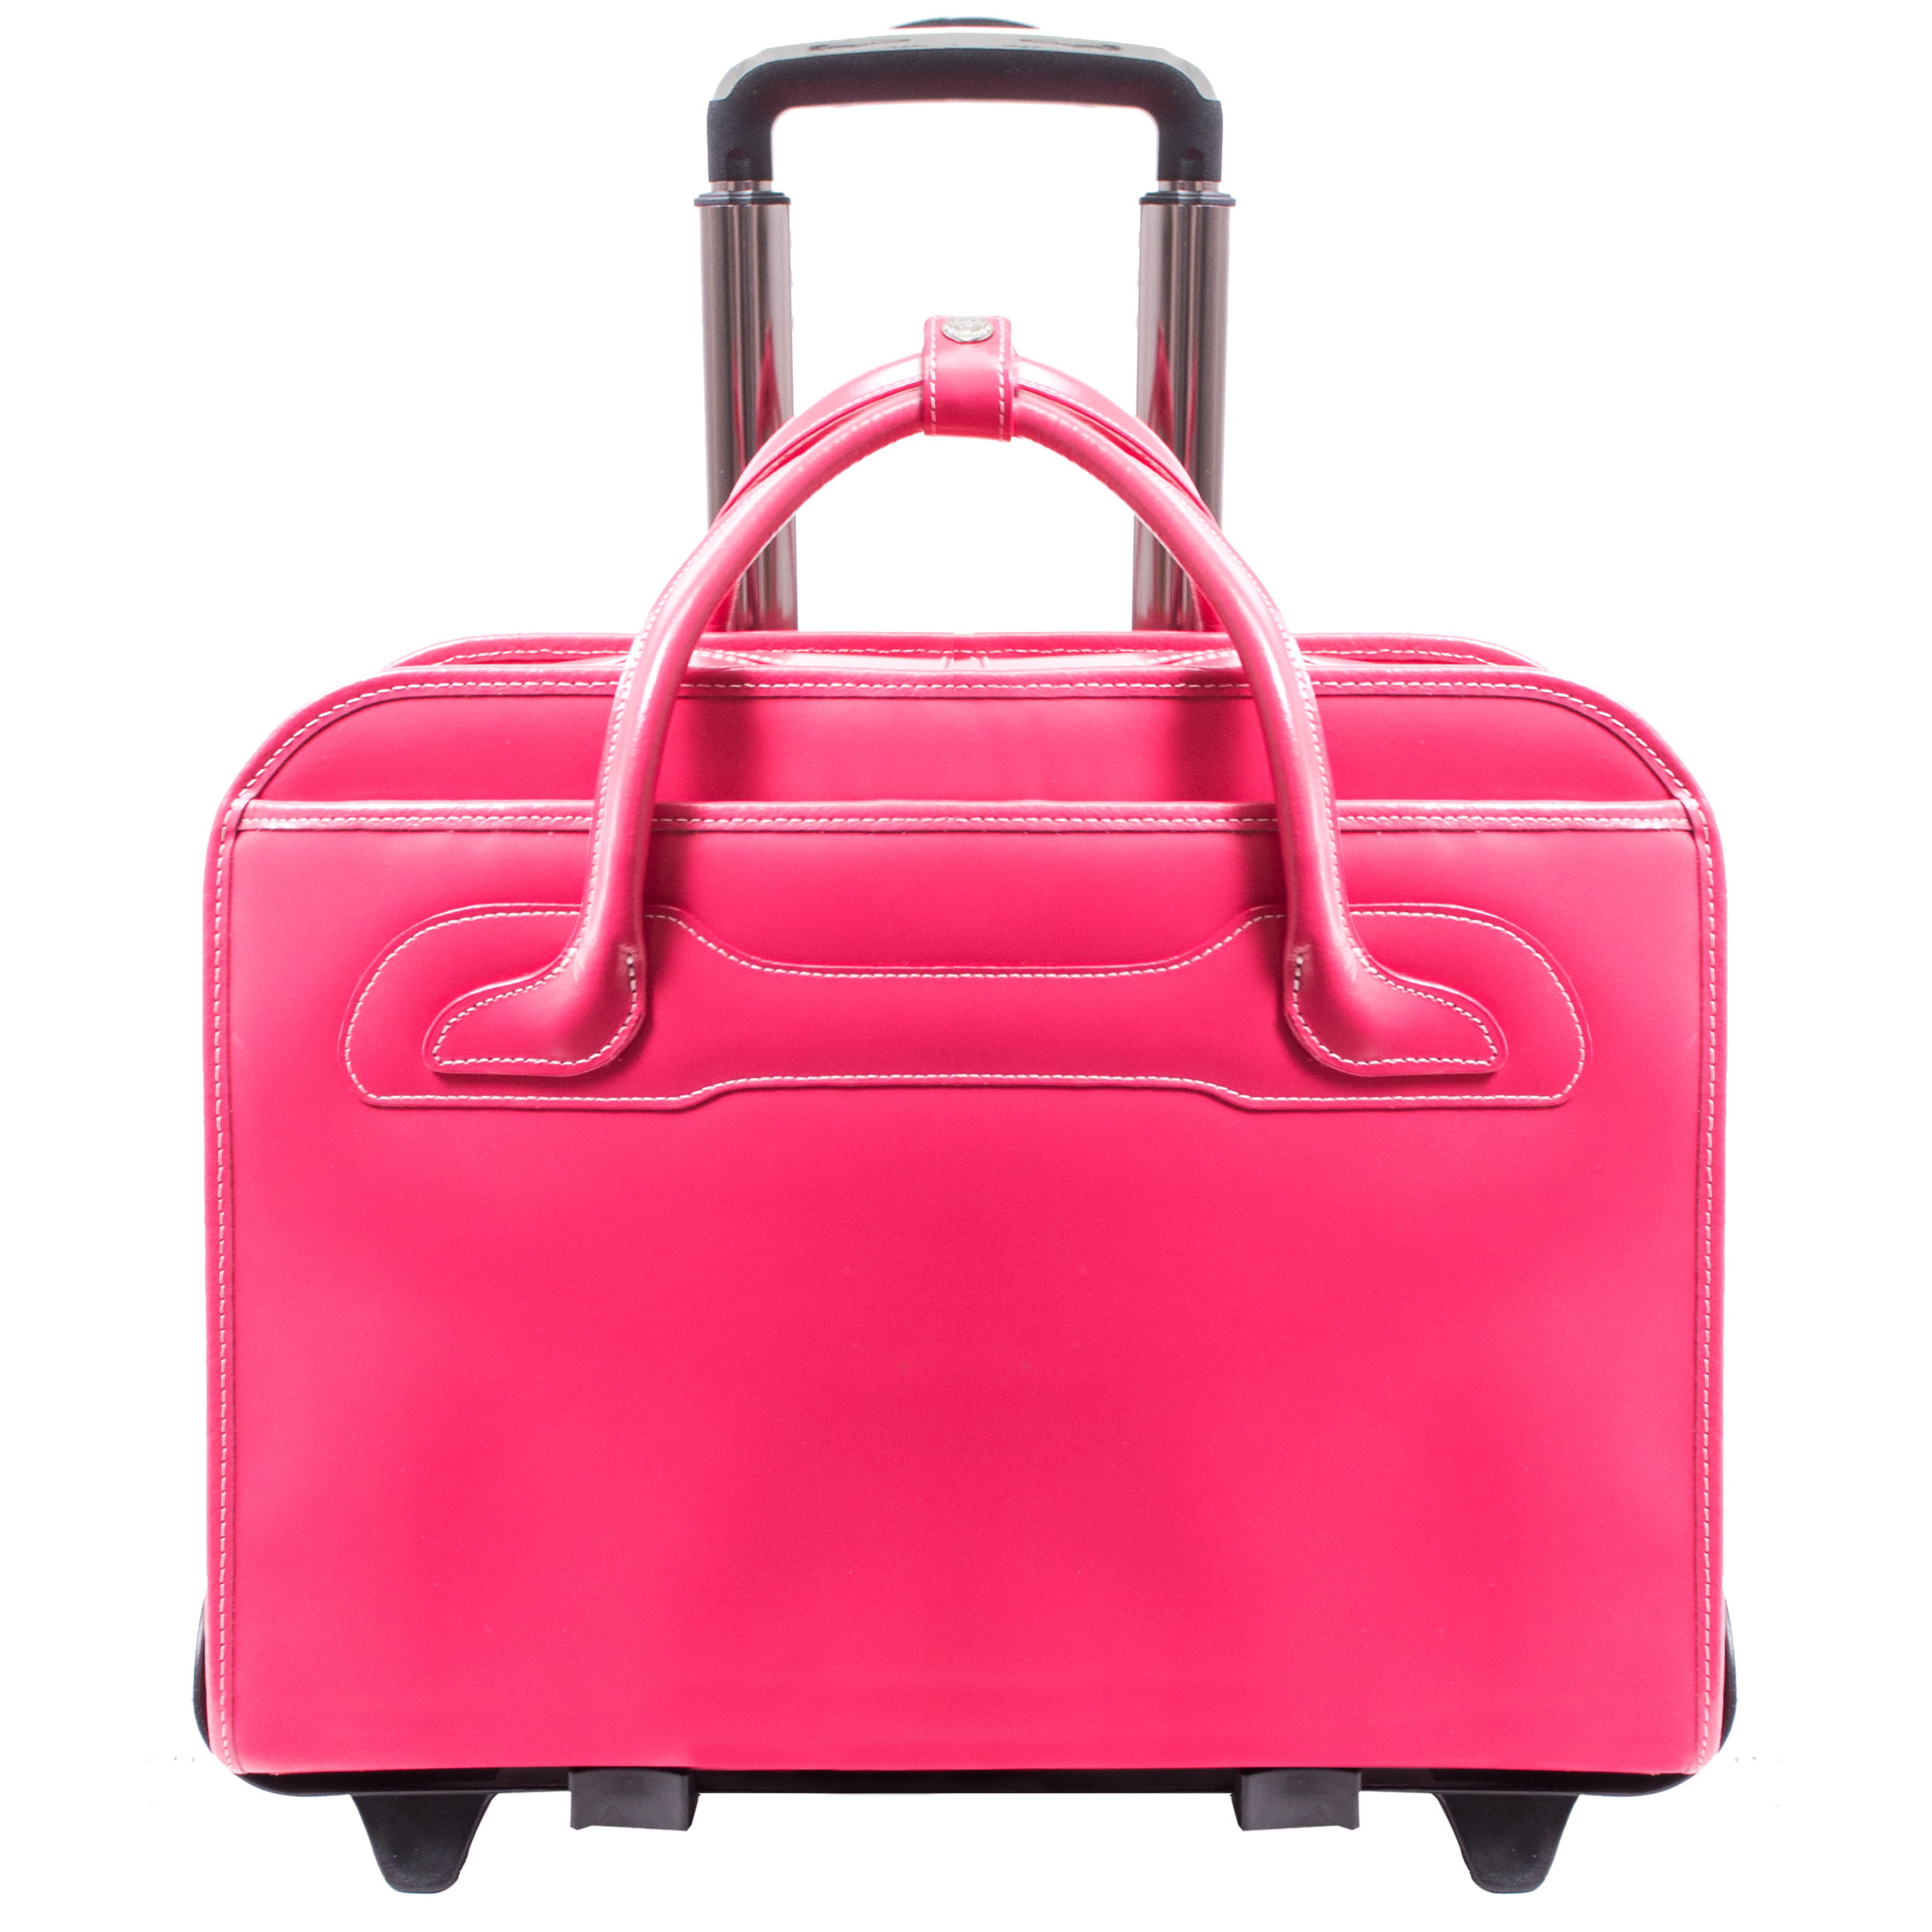 McKlein Women's Briefcase with Louis Vuitton Accessories 